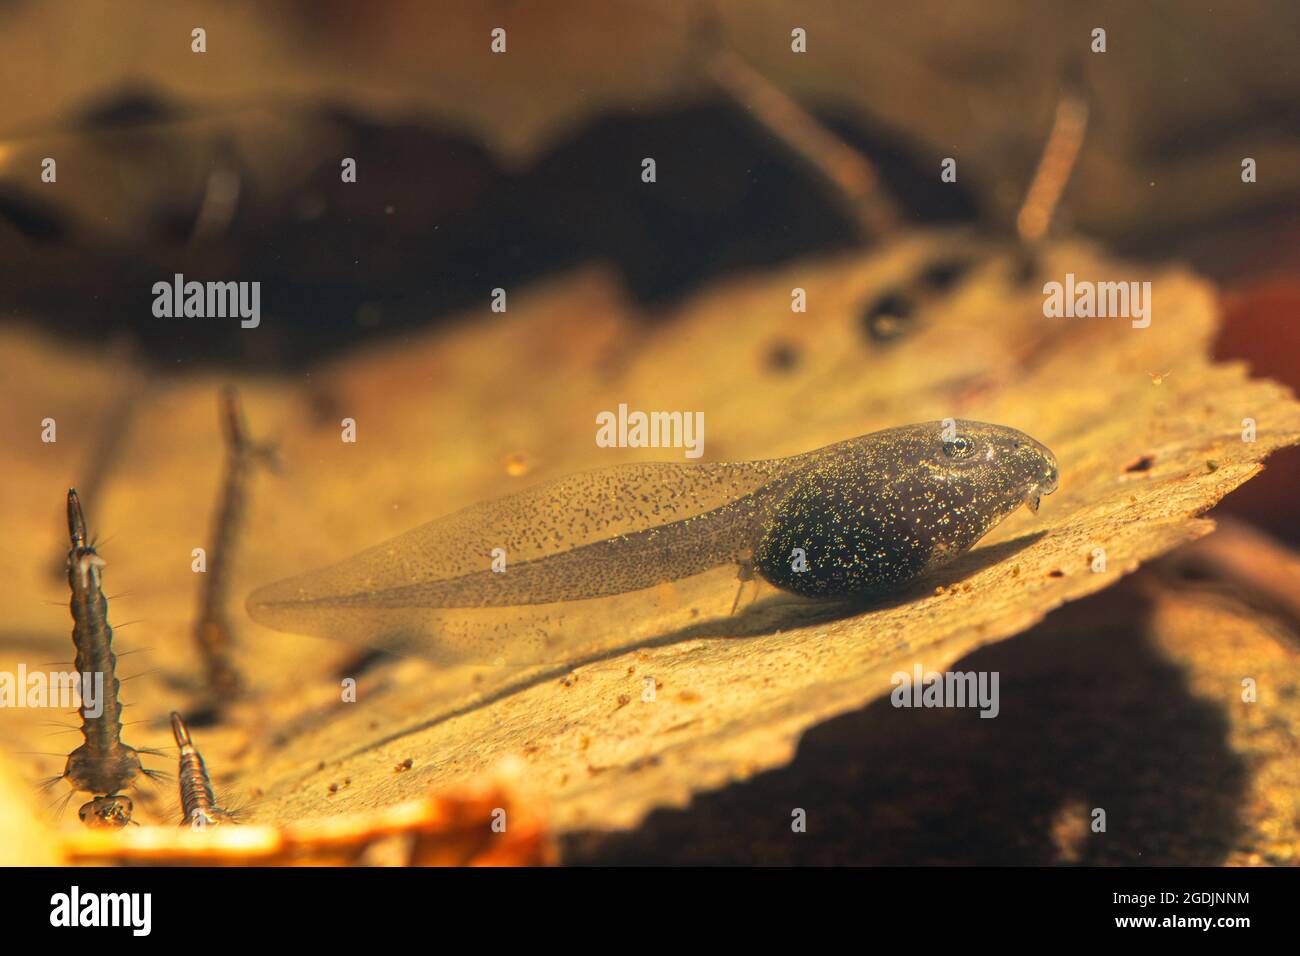 common frog, grass frog (Rana temporaria), legless tadpole, Germany Stock Photo